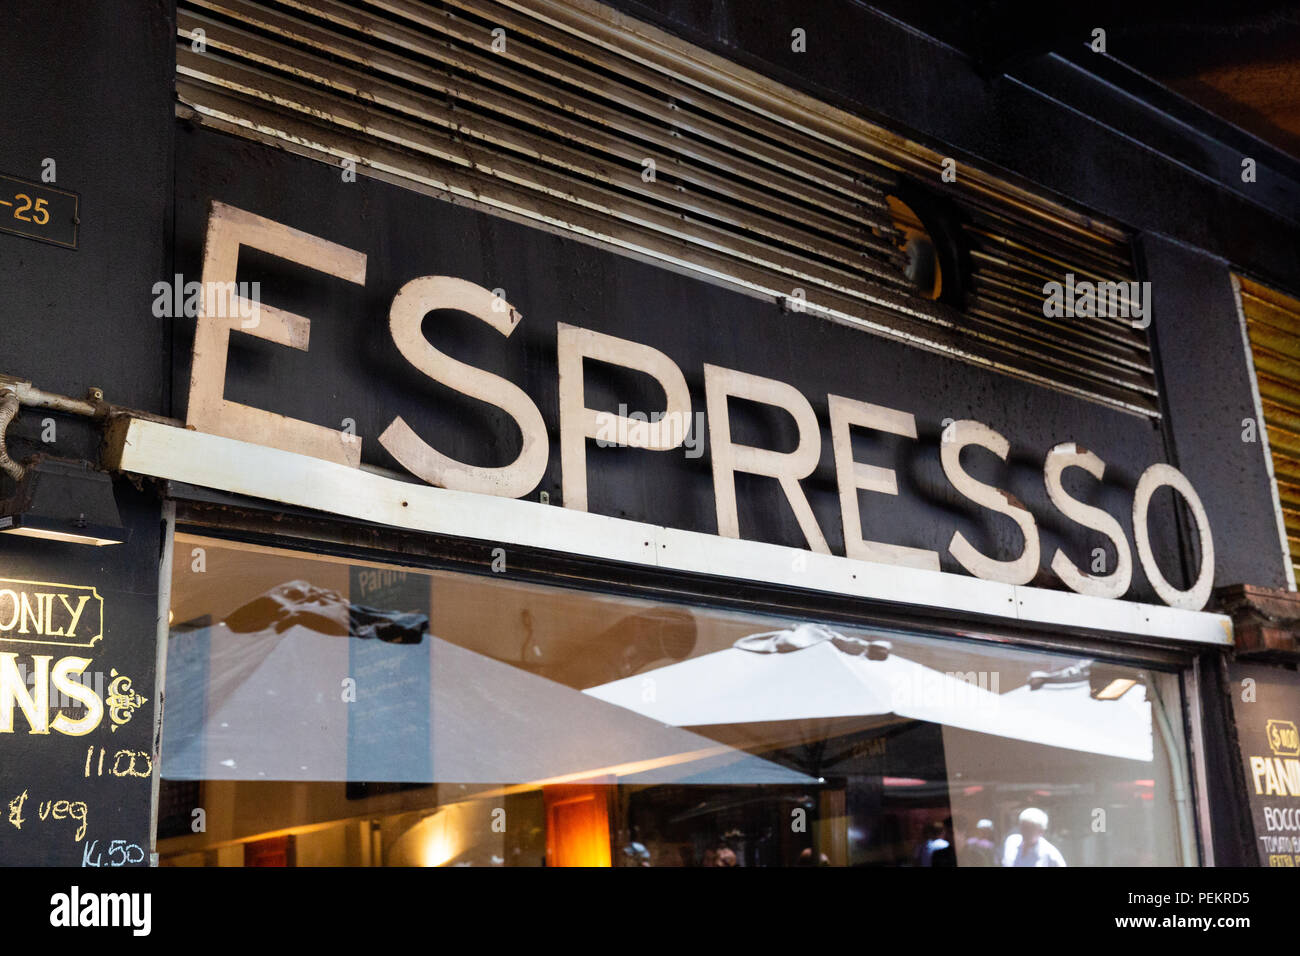 Großes Metall Schild mit der Aufschrift 'Espresso', ein Café Fassade (Degraves Espresso Bar) in Melbourne, Australien. Stockfoto